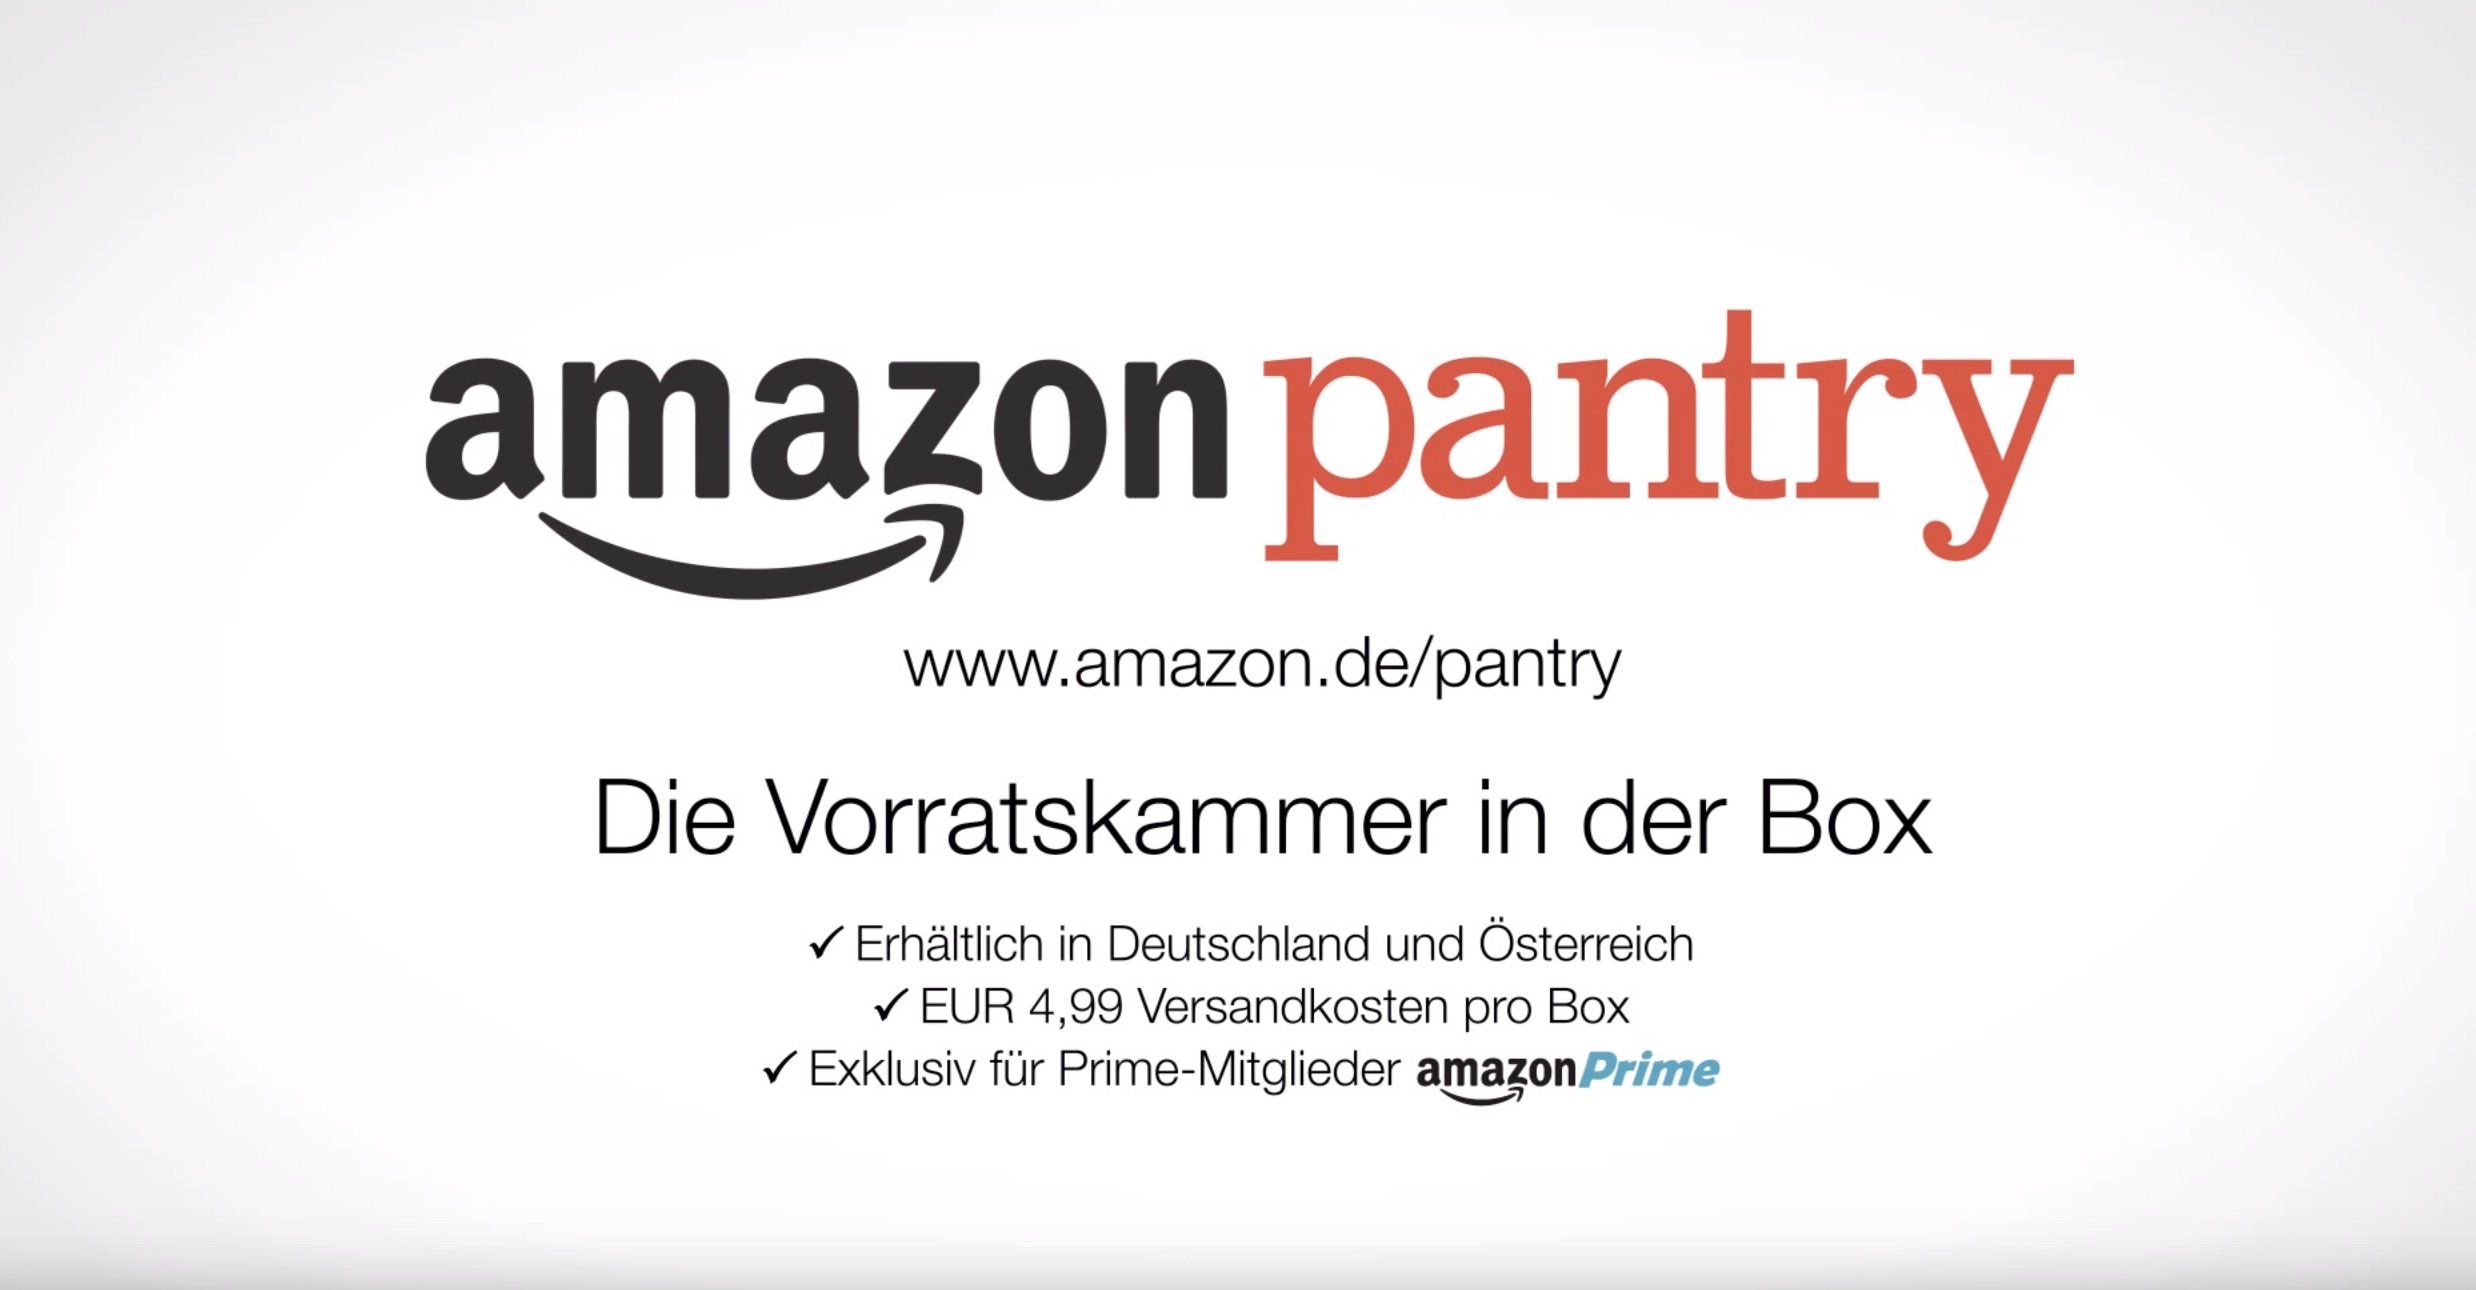 Amazon Pantry: Essen kaufen bei Amazon - die virtuelle Vorratskammer! 3